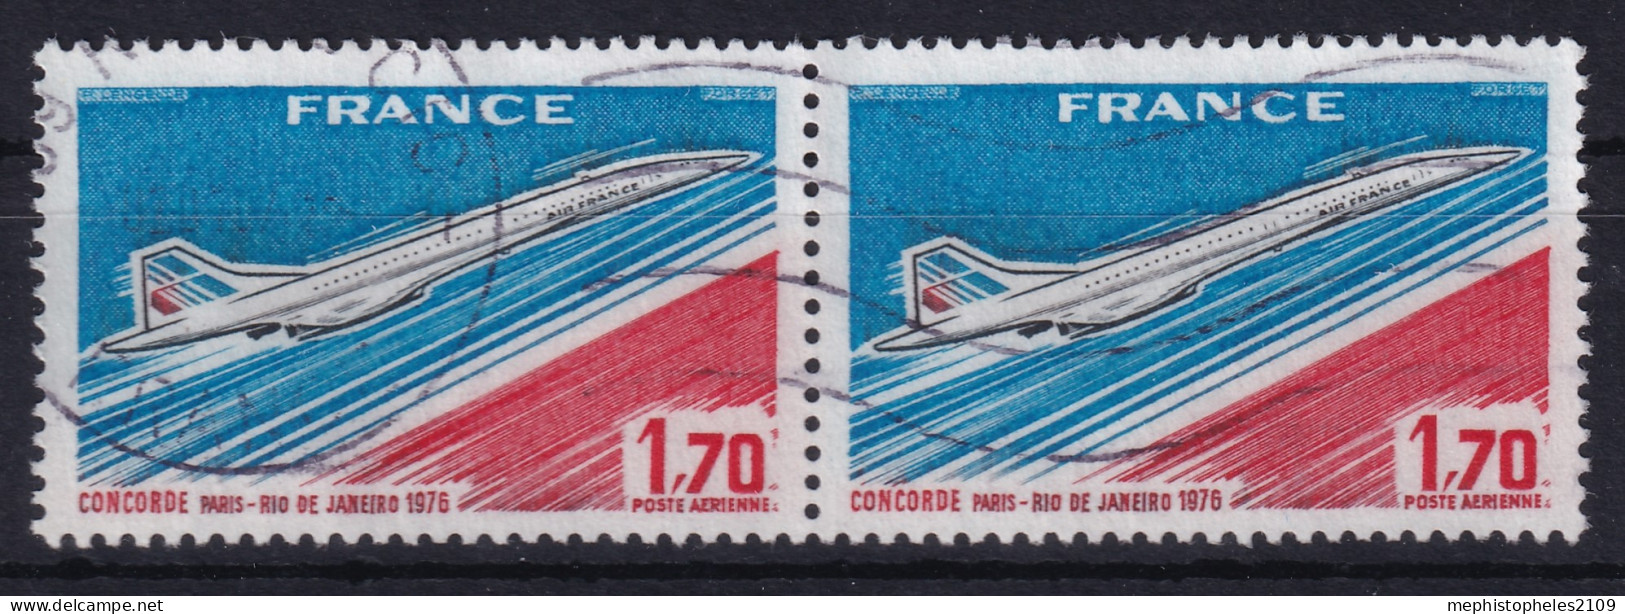 FRANCE 1976 - Canceled - YT 49 - Poste Aérienne - Pair - 1960-.... Oblitérés